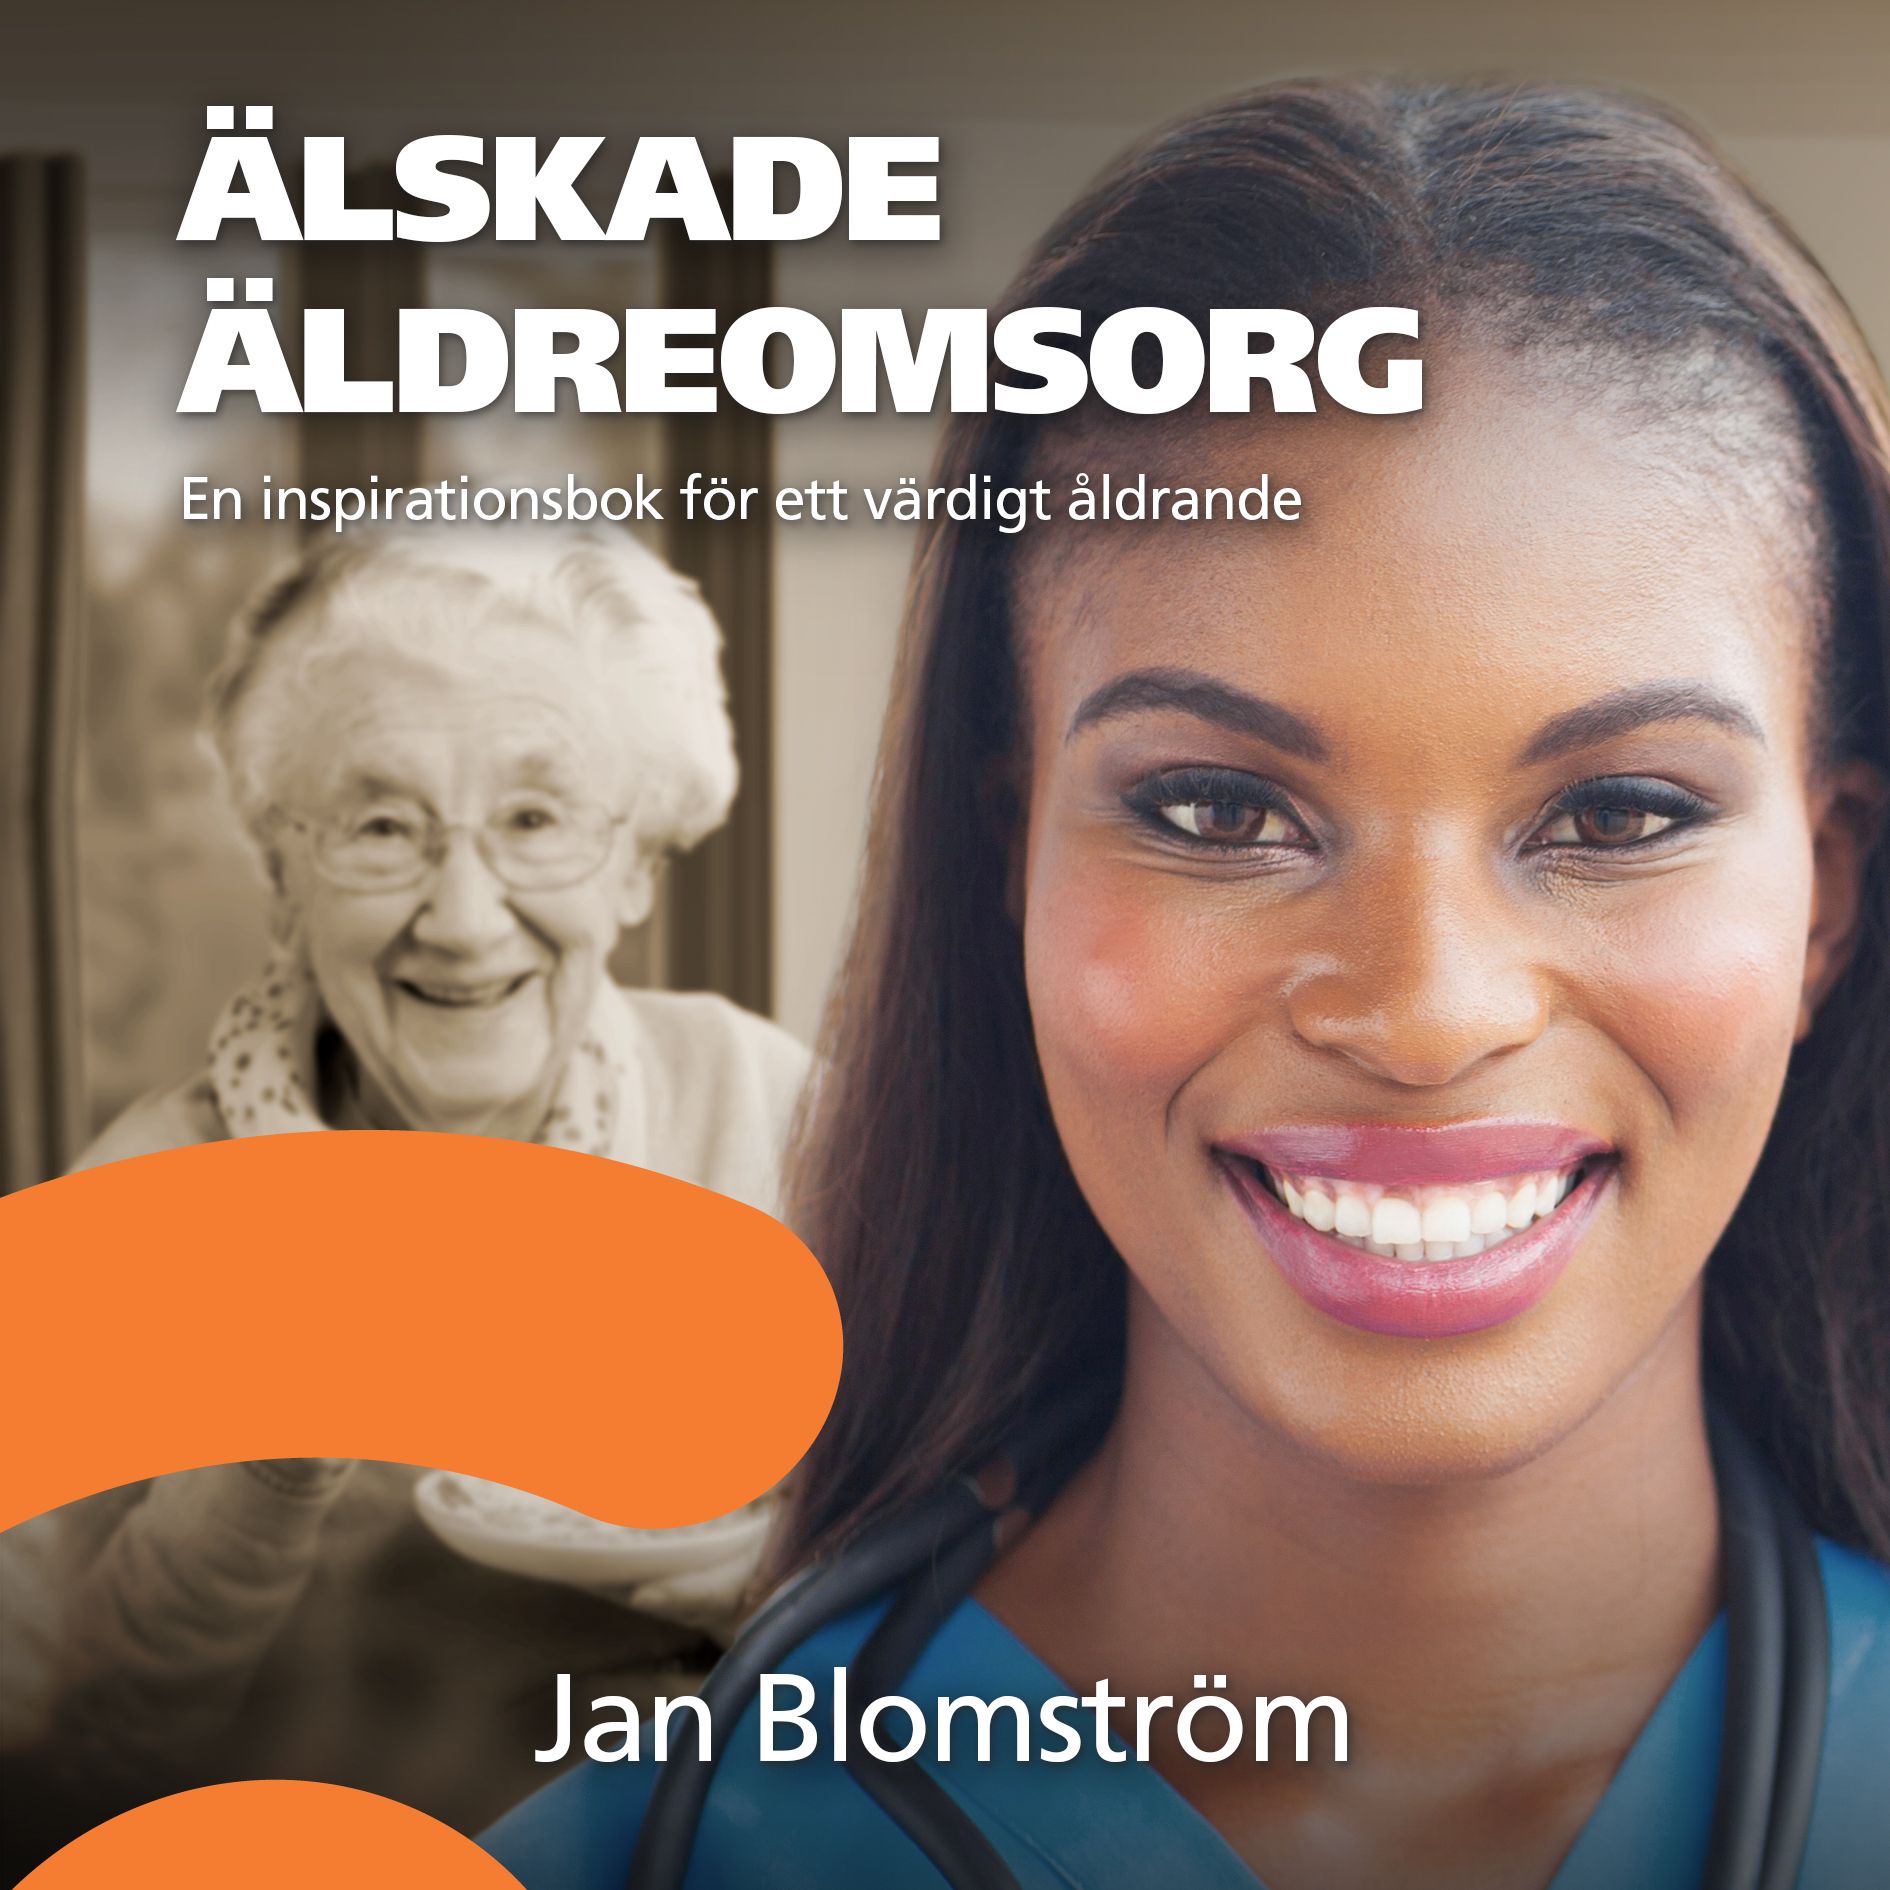 Älskade äldreomsorg, audiobook by Jan Blomström